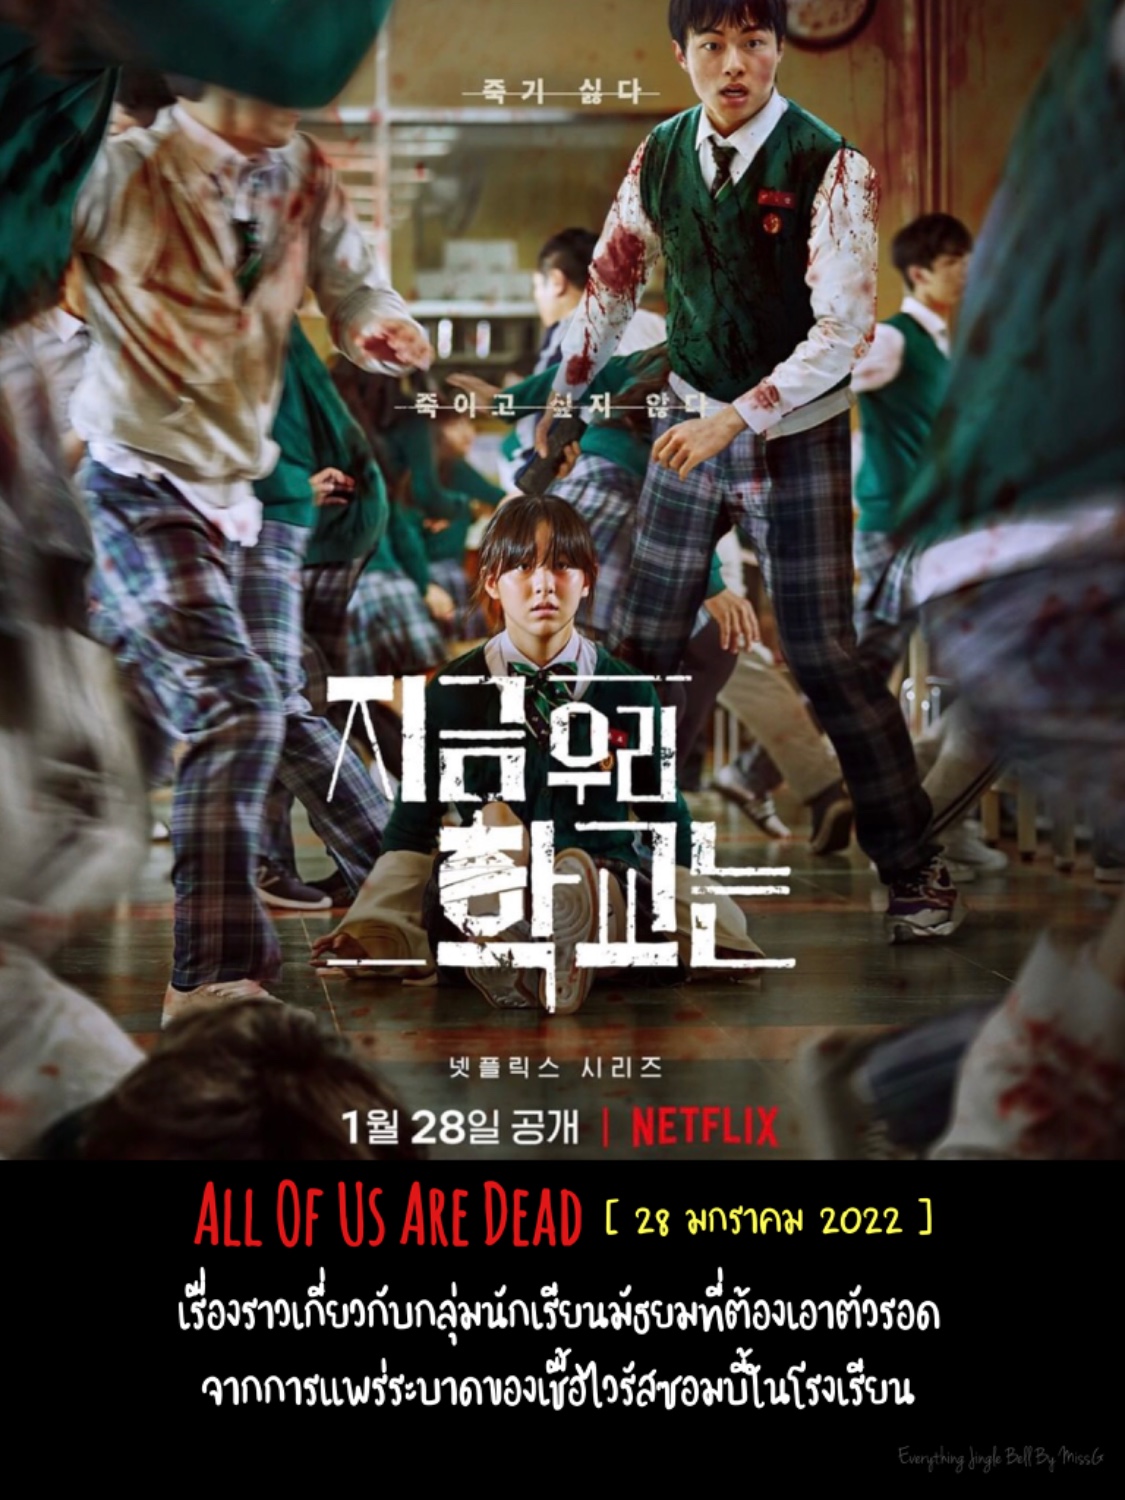 Netflix ไม่แผ่วเลย!!! จัดเต็มทั้งซีรี่ย์และภาพยนตร์เกาหลี ตลอดปี 2022….. -  Pantip